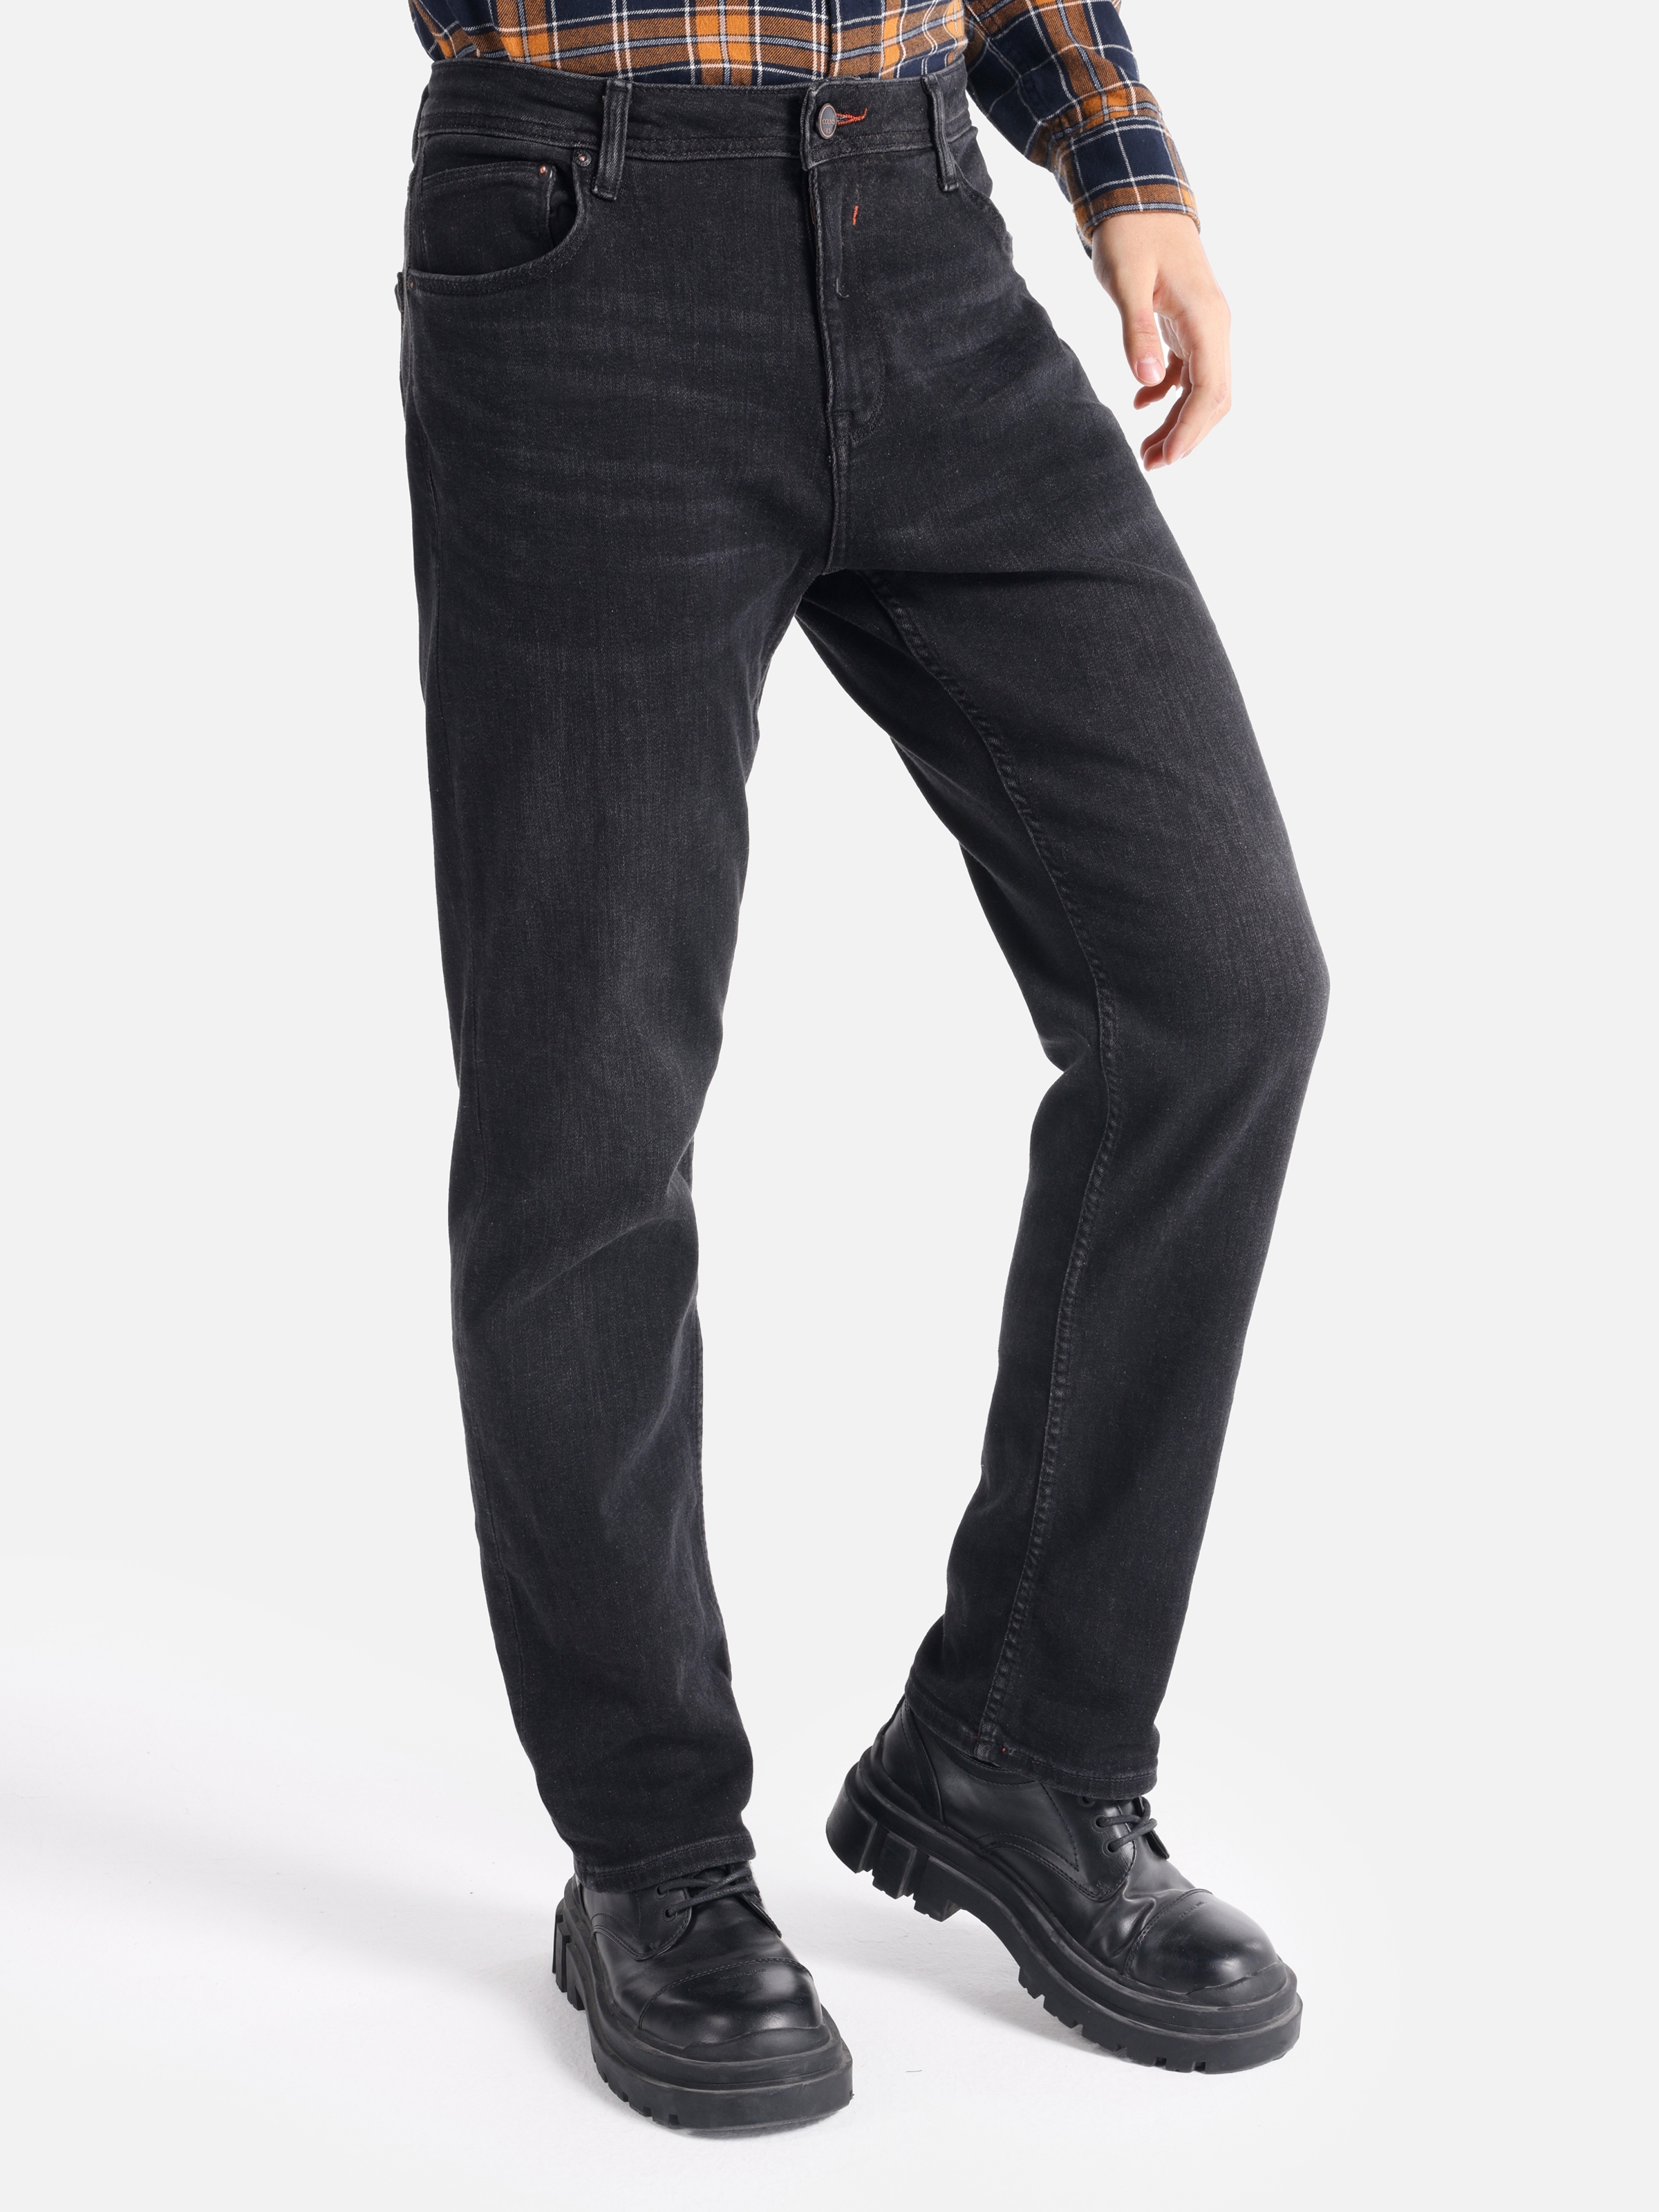 Afișați detalii pentru Pantaloni De Barbati Negru Regular Fit 045 DAVID CL1065411